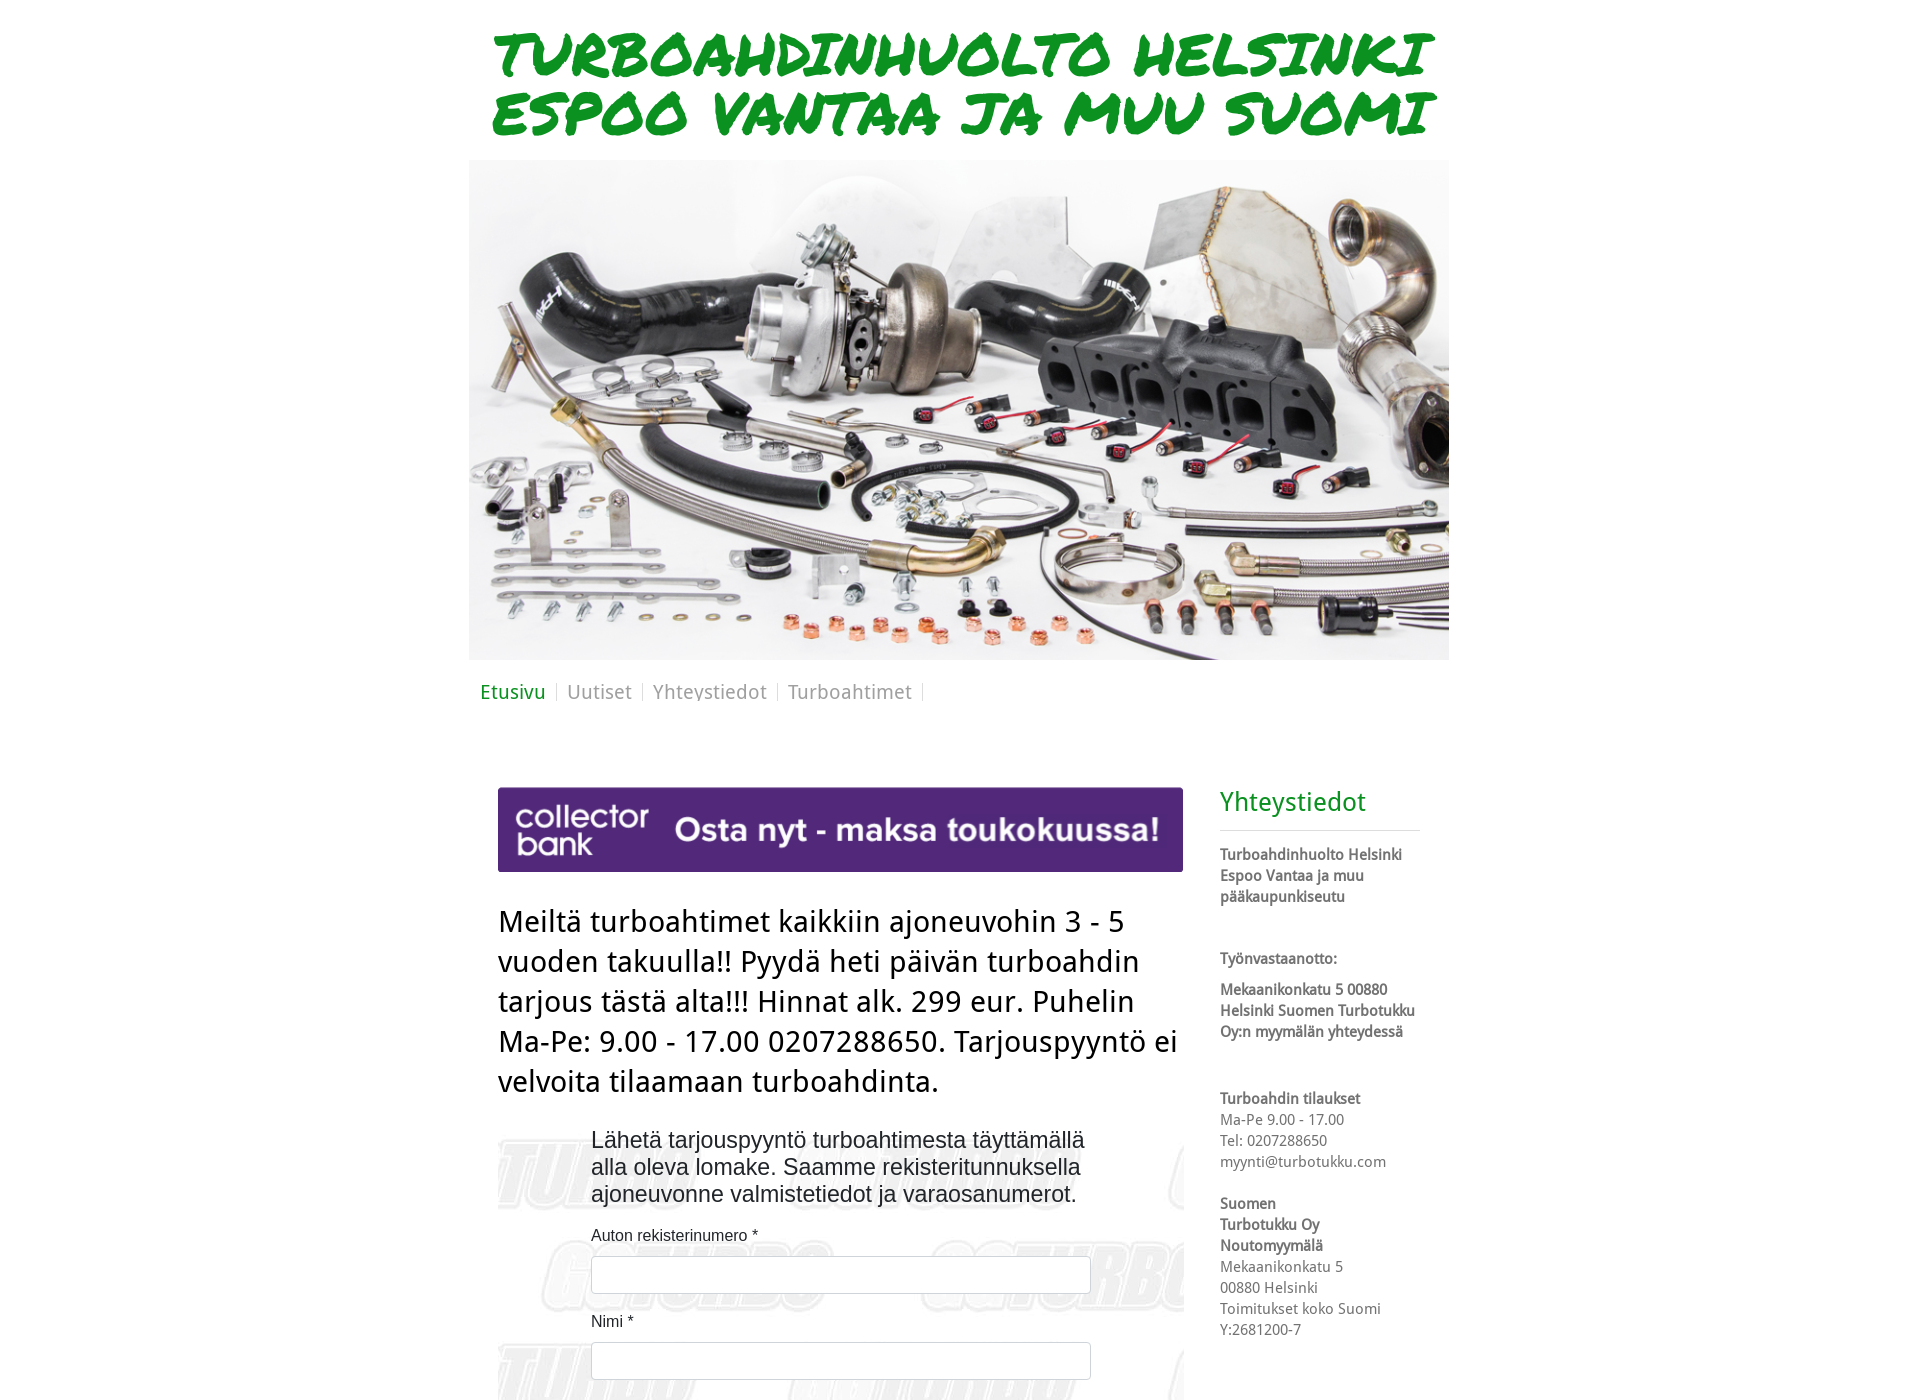 Skärmdump för turbohuoltoespoo.fi